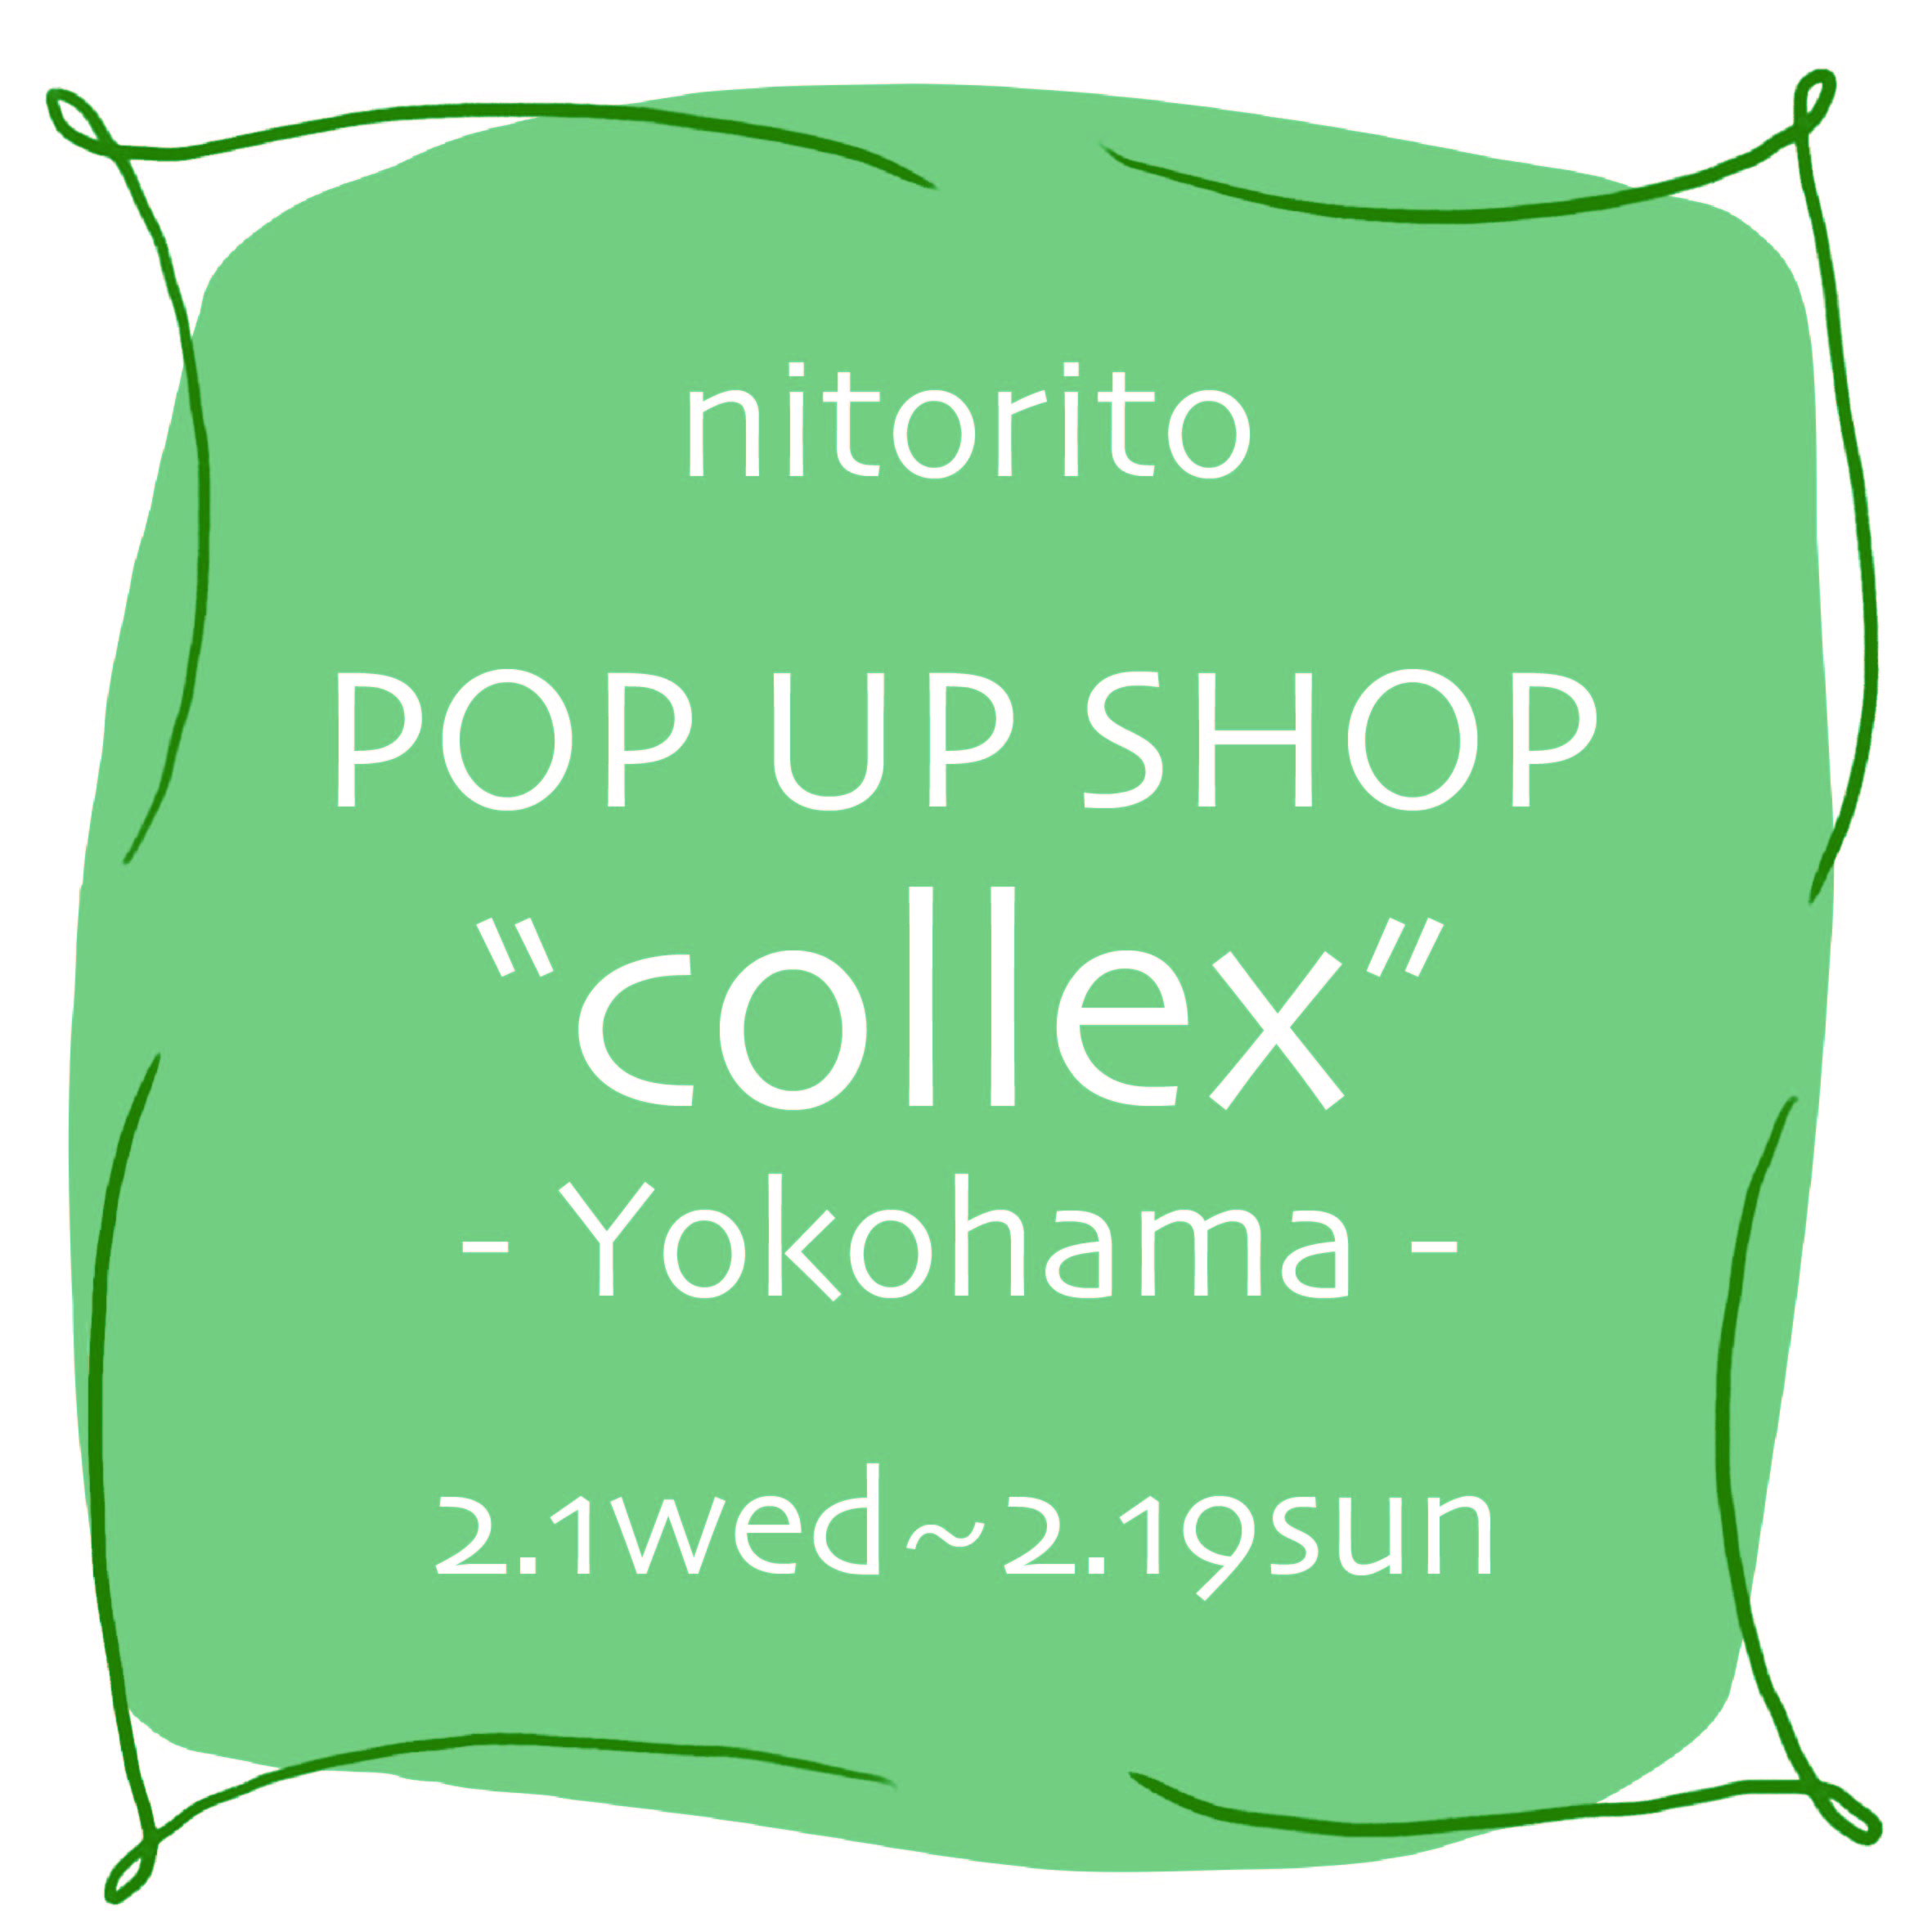 collex 横浜店にてPOPUPSHOPを行います！